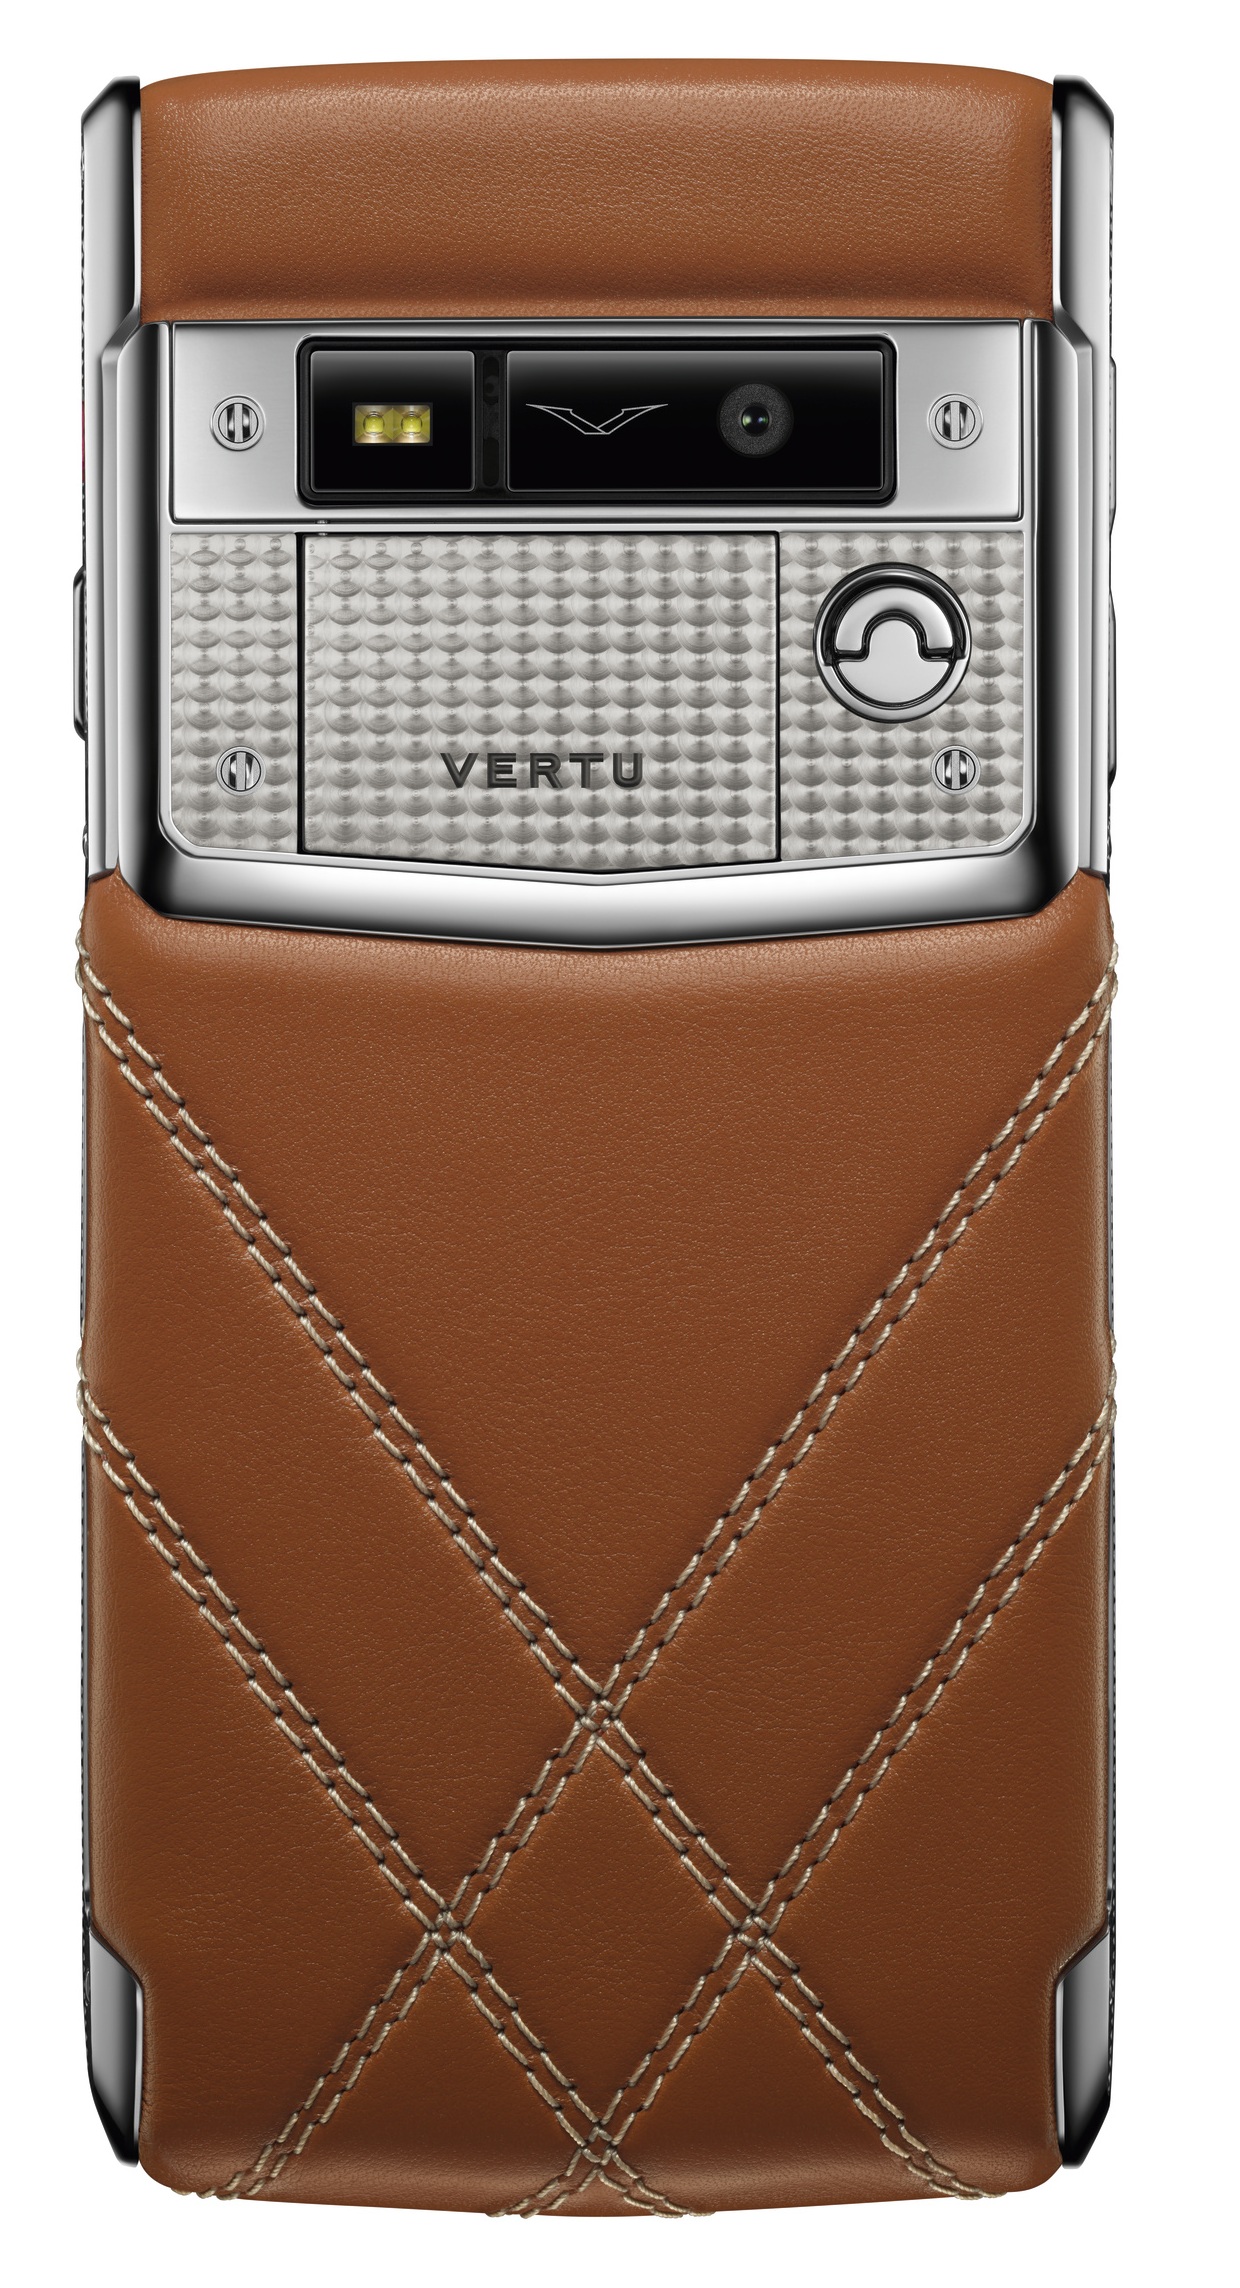 Bentley dan Vertu terhubung ke smartphone edisi khusus 5